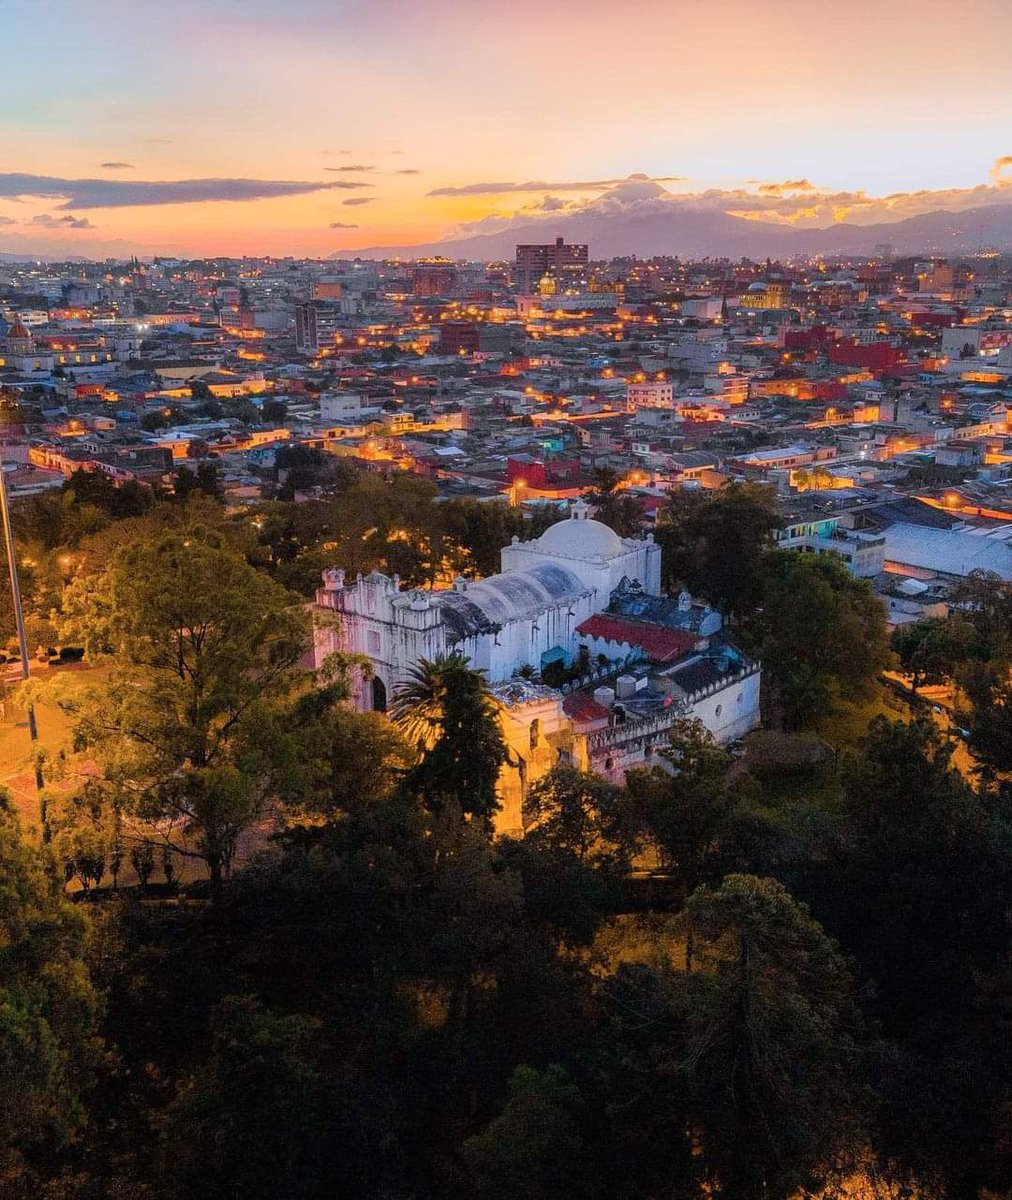 La belleza de nuestro país 🇬🇹😍 El Cerrito del Carmen, Guatemala.
📷 @utopiadegarcia
#Guatemala ❤🇬🇹💙#CerritoDelCarmen #NuestraPostal